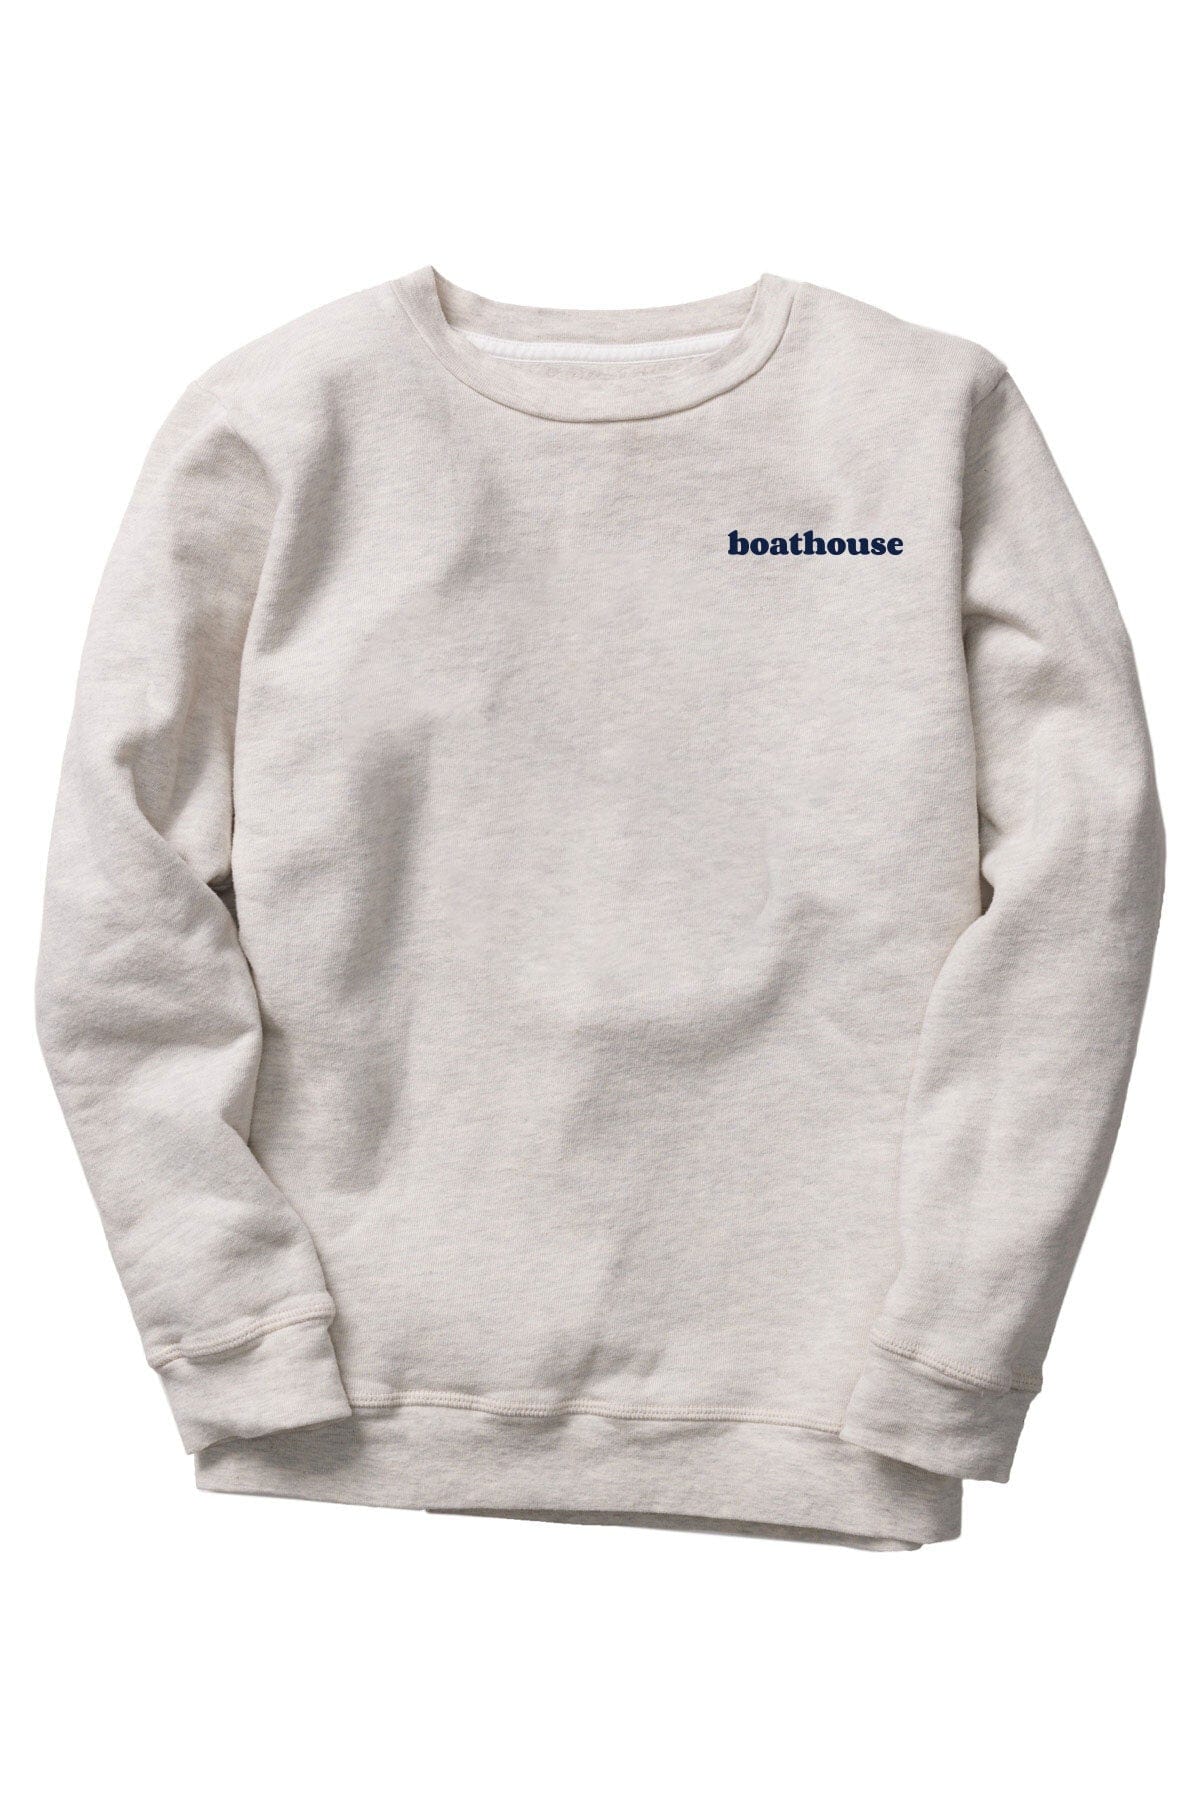 BOATHOUSE Unisex Basic Sweatshirt